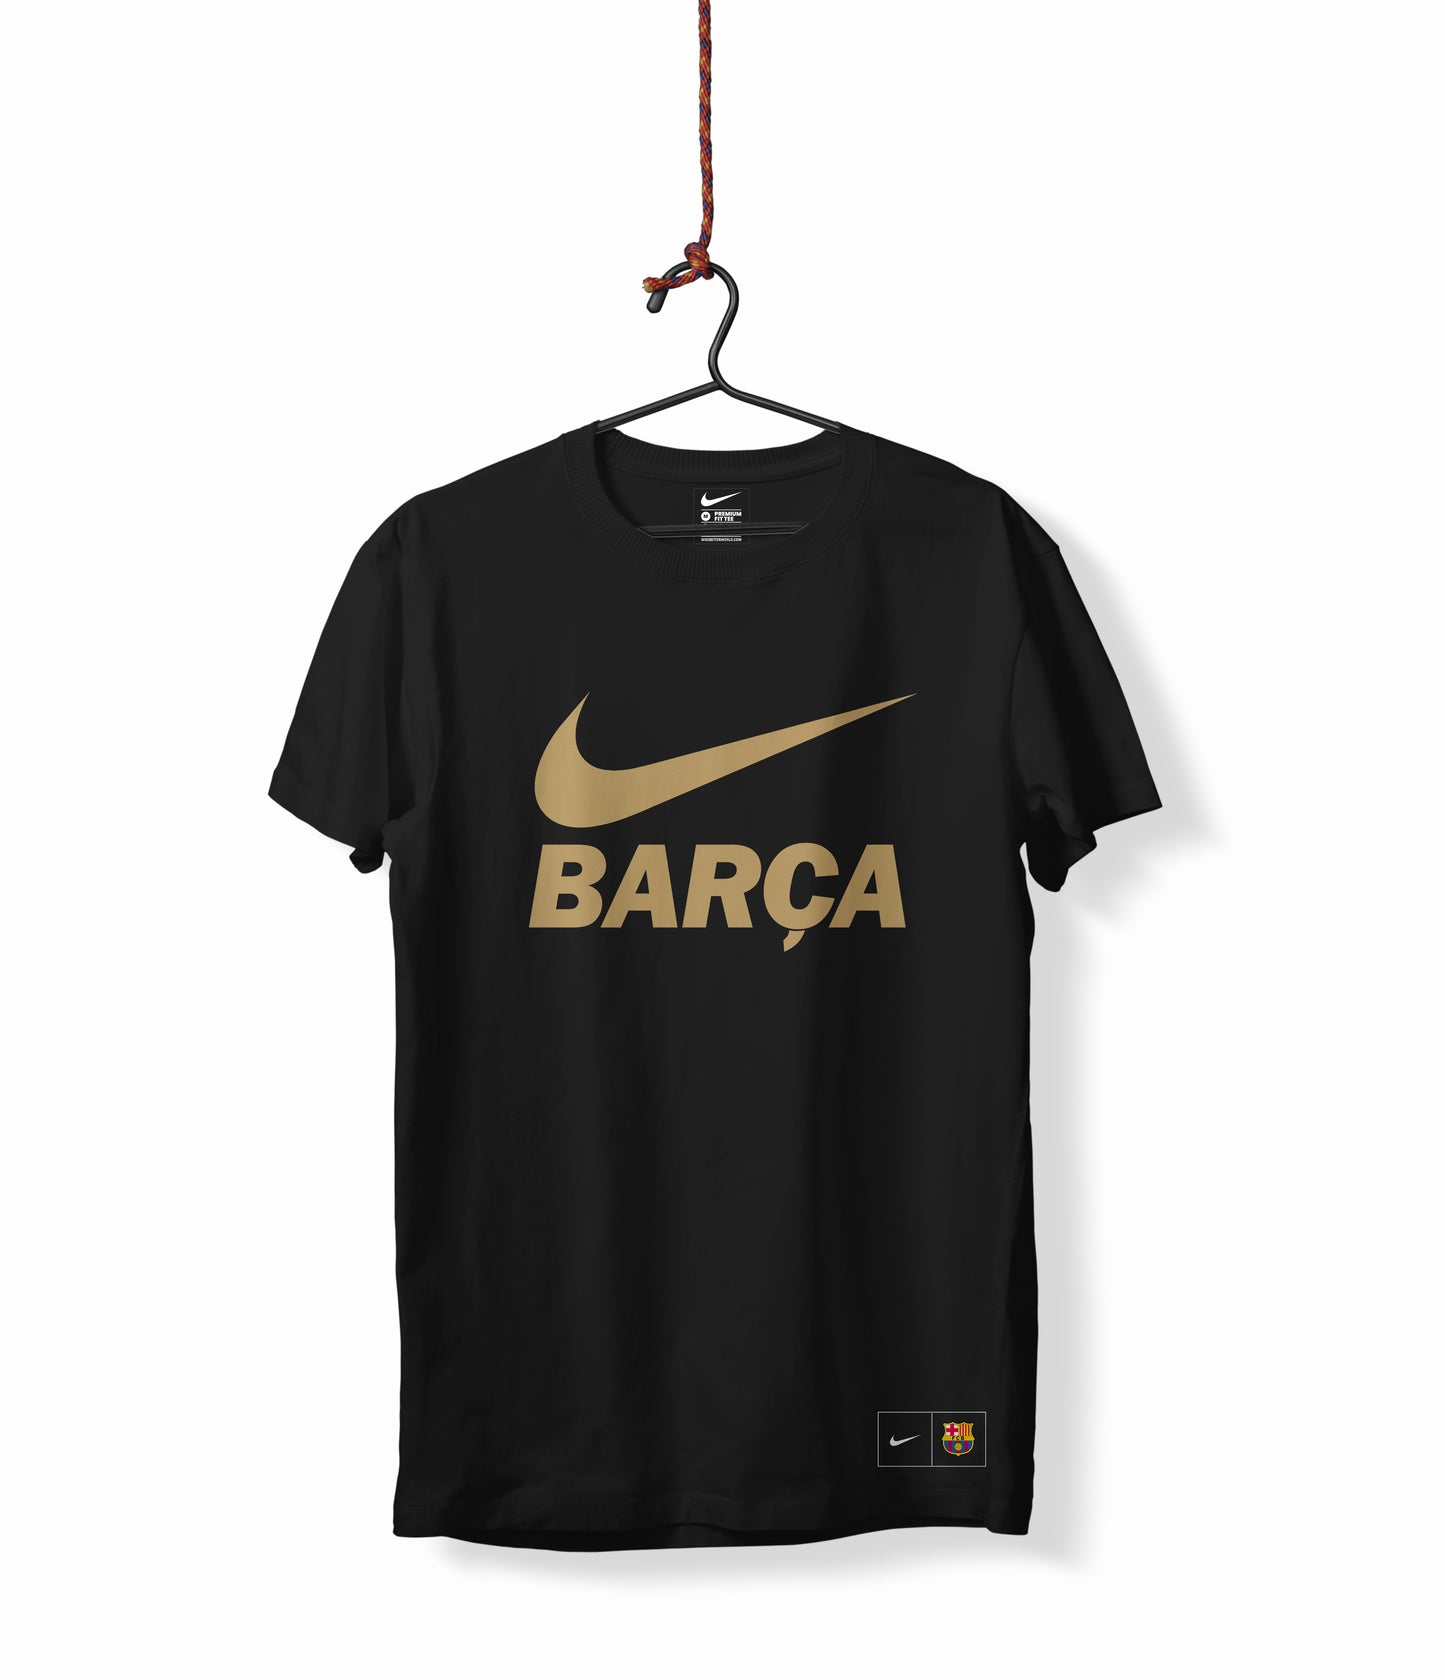 “Barça” T-shirt – Black